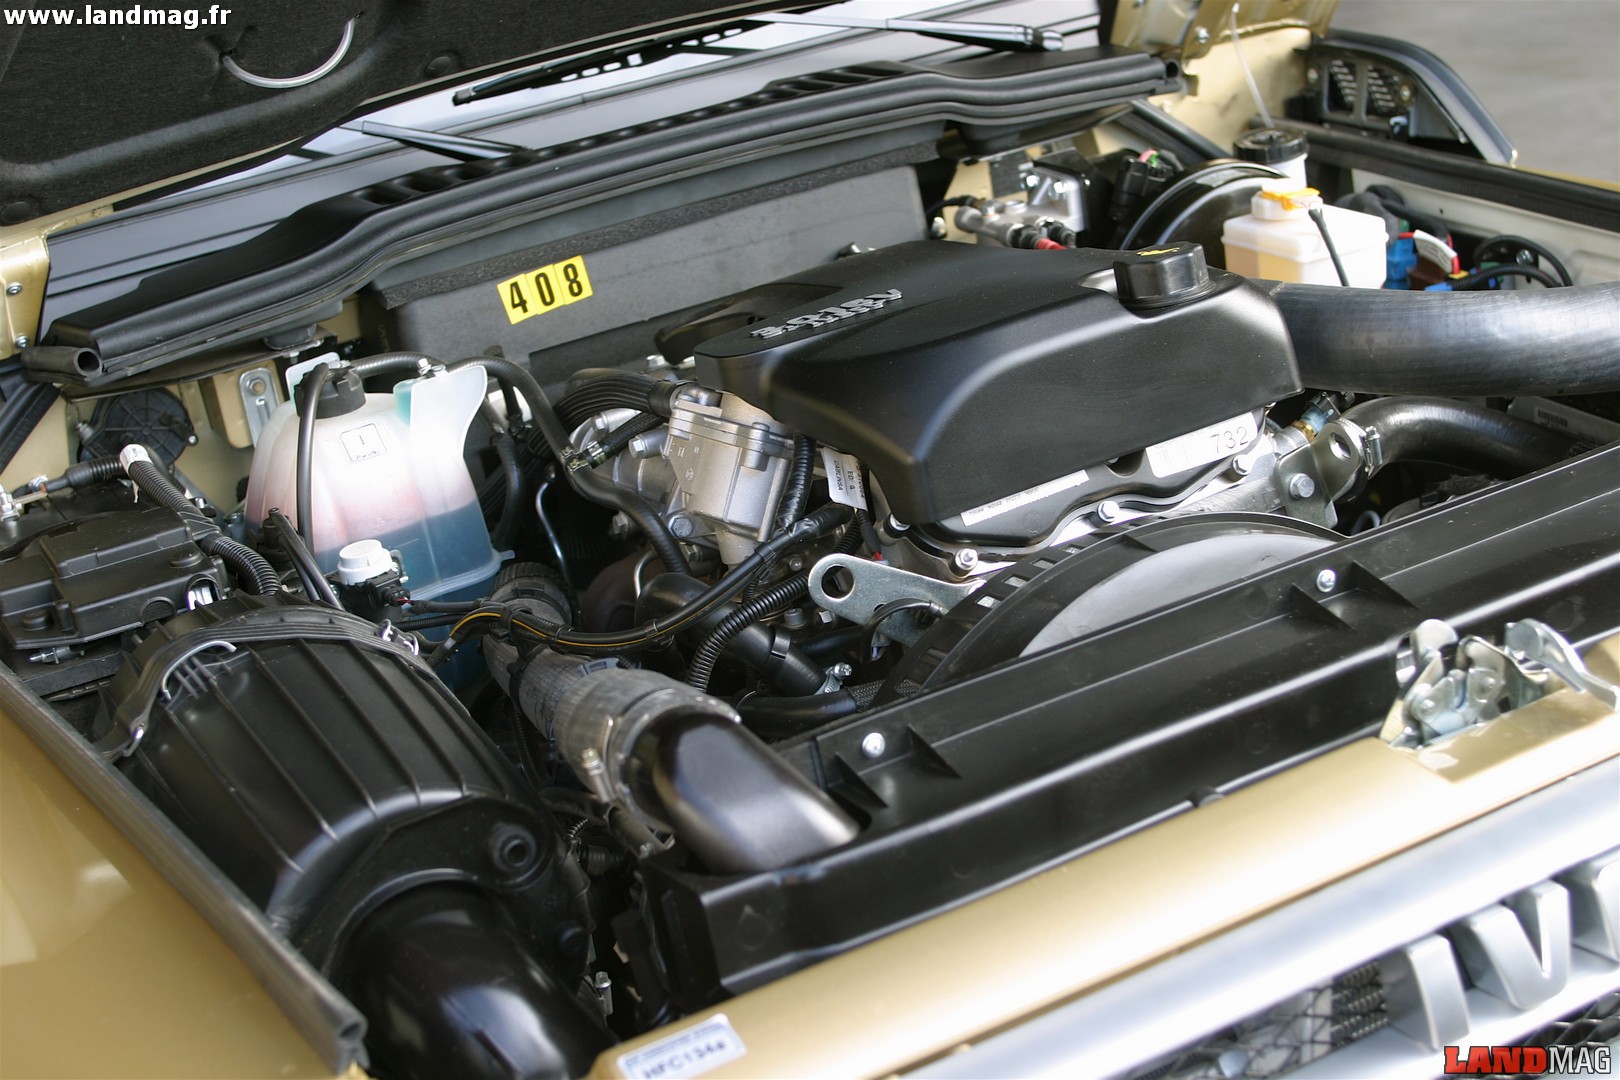 Le moteur 3,0 l HPT diffère du 3,0 l HPI par son turbo à géométrie variable, qui lui permet d'afficher 176 ch.